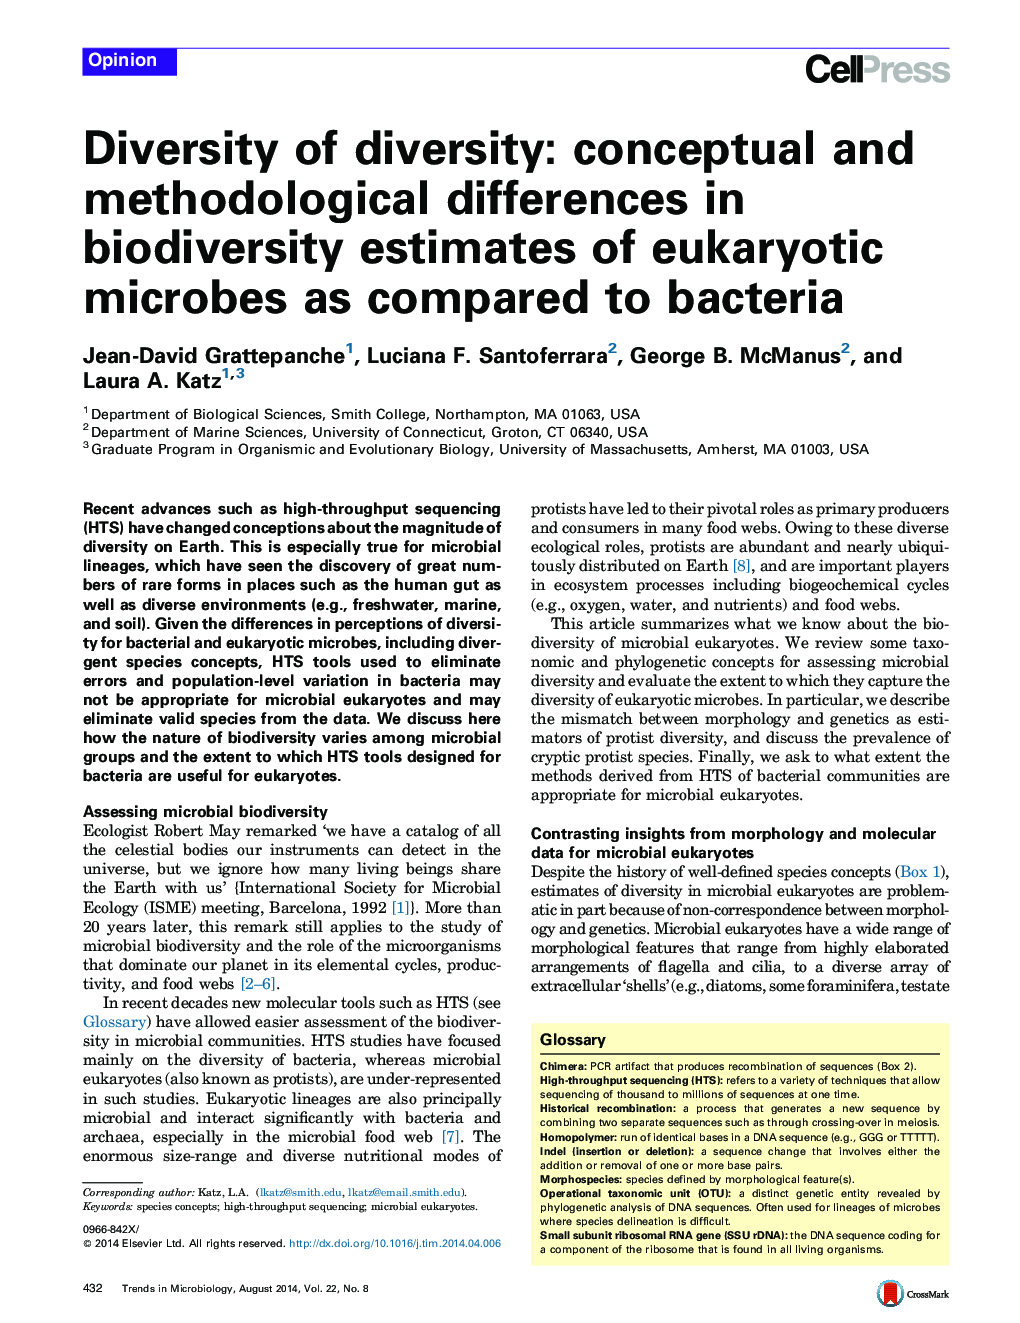 تنوع تنوع: تفاوت های مفهومی و روش شناختی در ارزیابی تنوع زیستی میکروب های یوکاریوتی نسبت به باکتری ها 